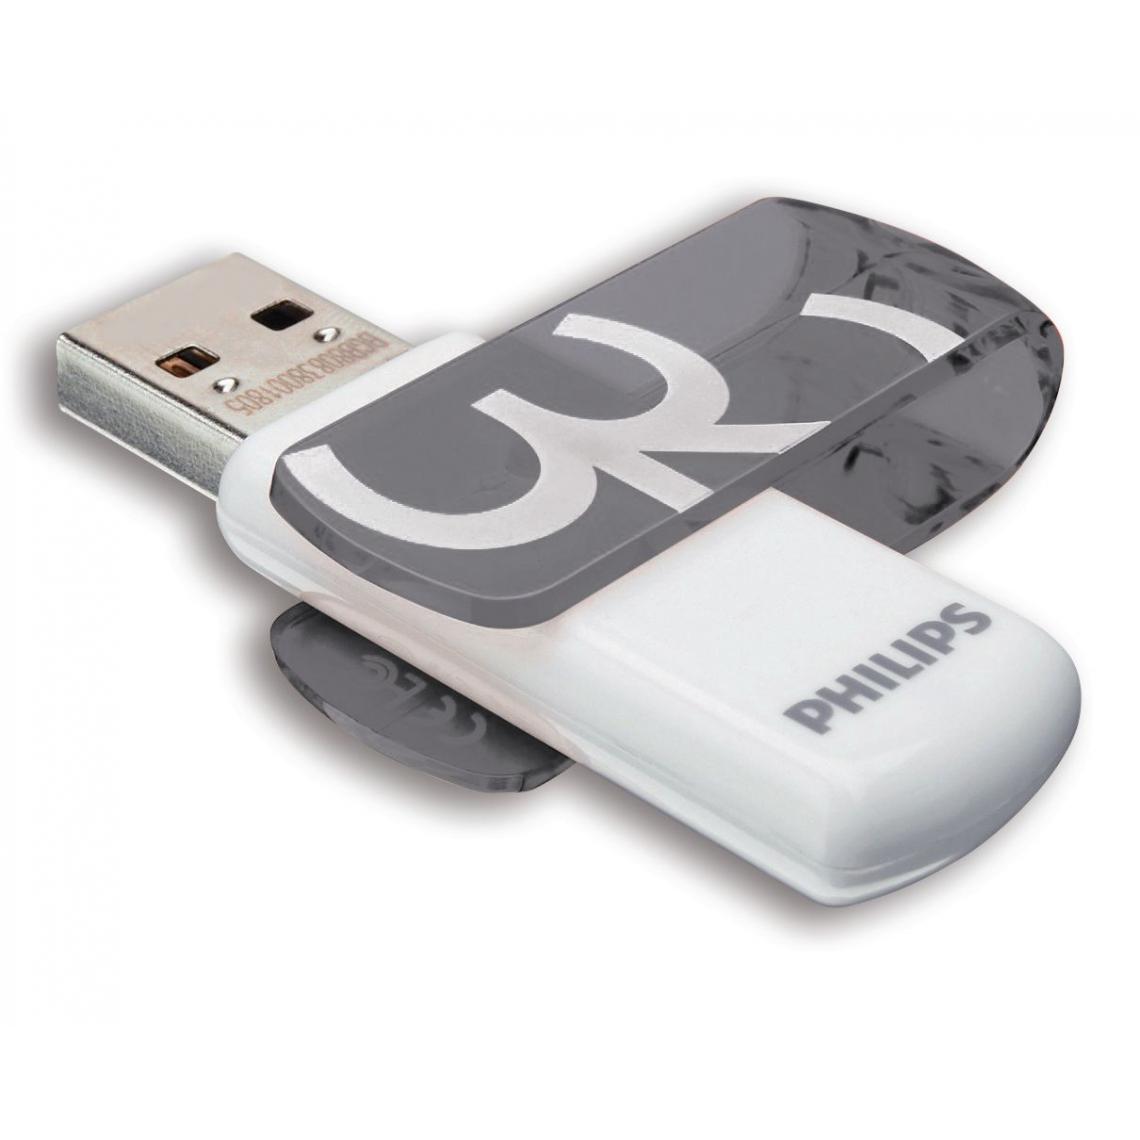 Philips - Clé USB Vivid Grise 32 Go - Clés USB